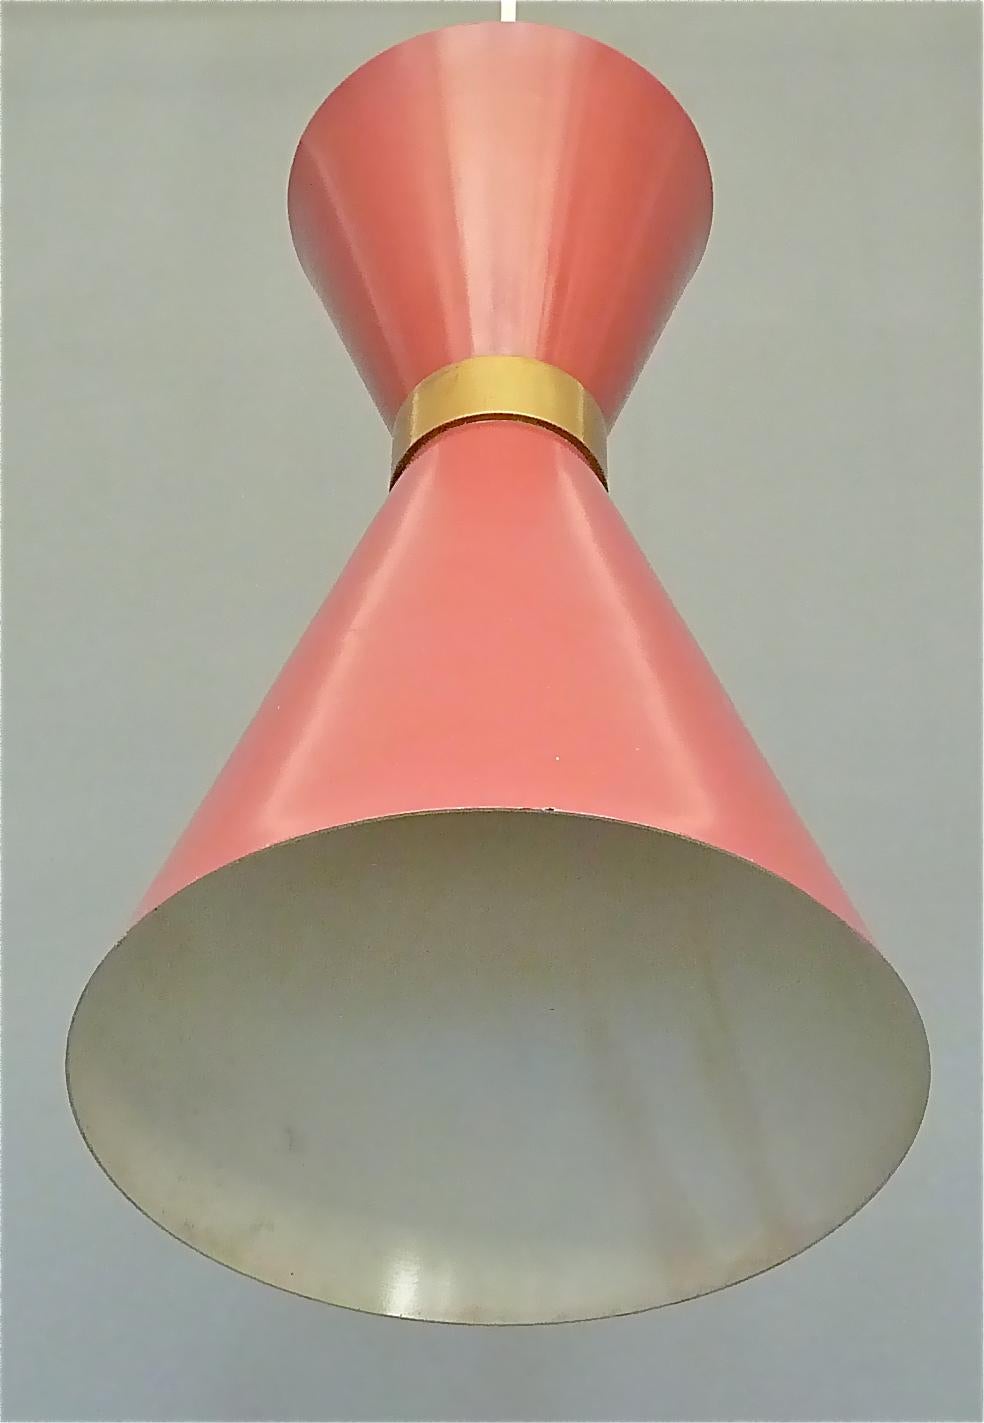 Midcentury Carl Moor BAG Turgi Pendant Lamp Diabolo Red Stilnovo Style 1950s For Sale 4